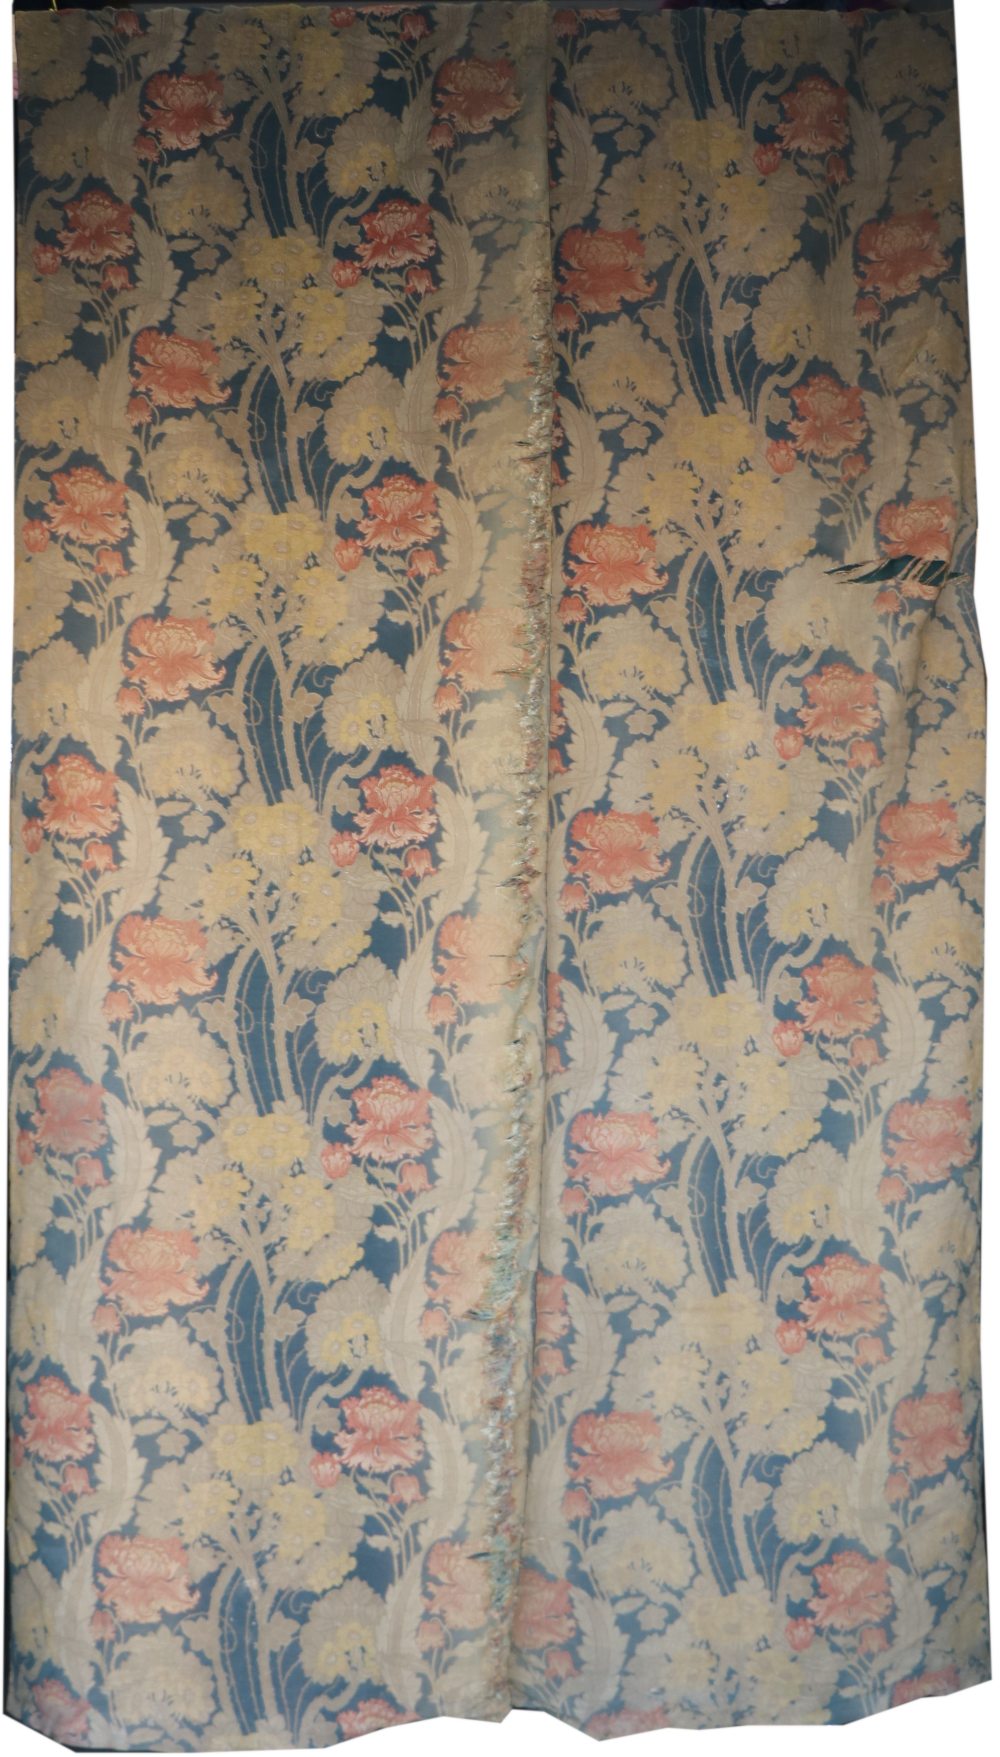 A pair of good William Morris design Curtains,